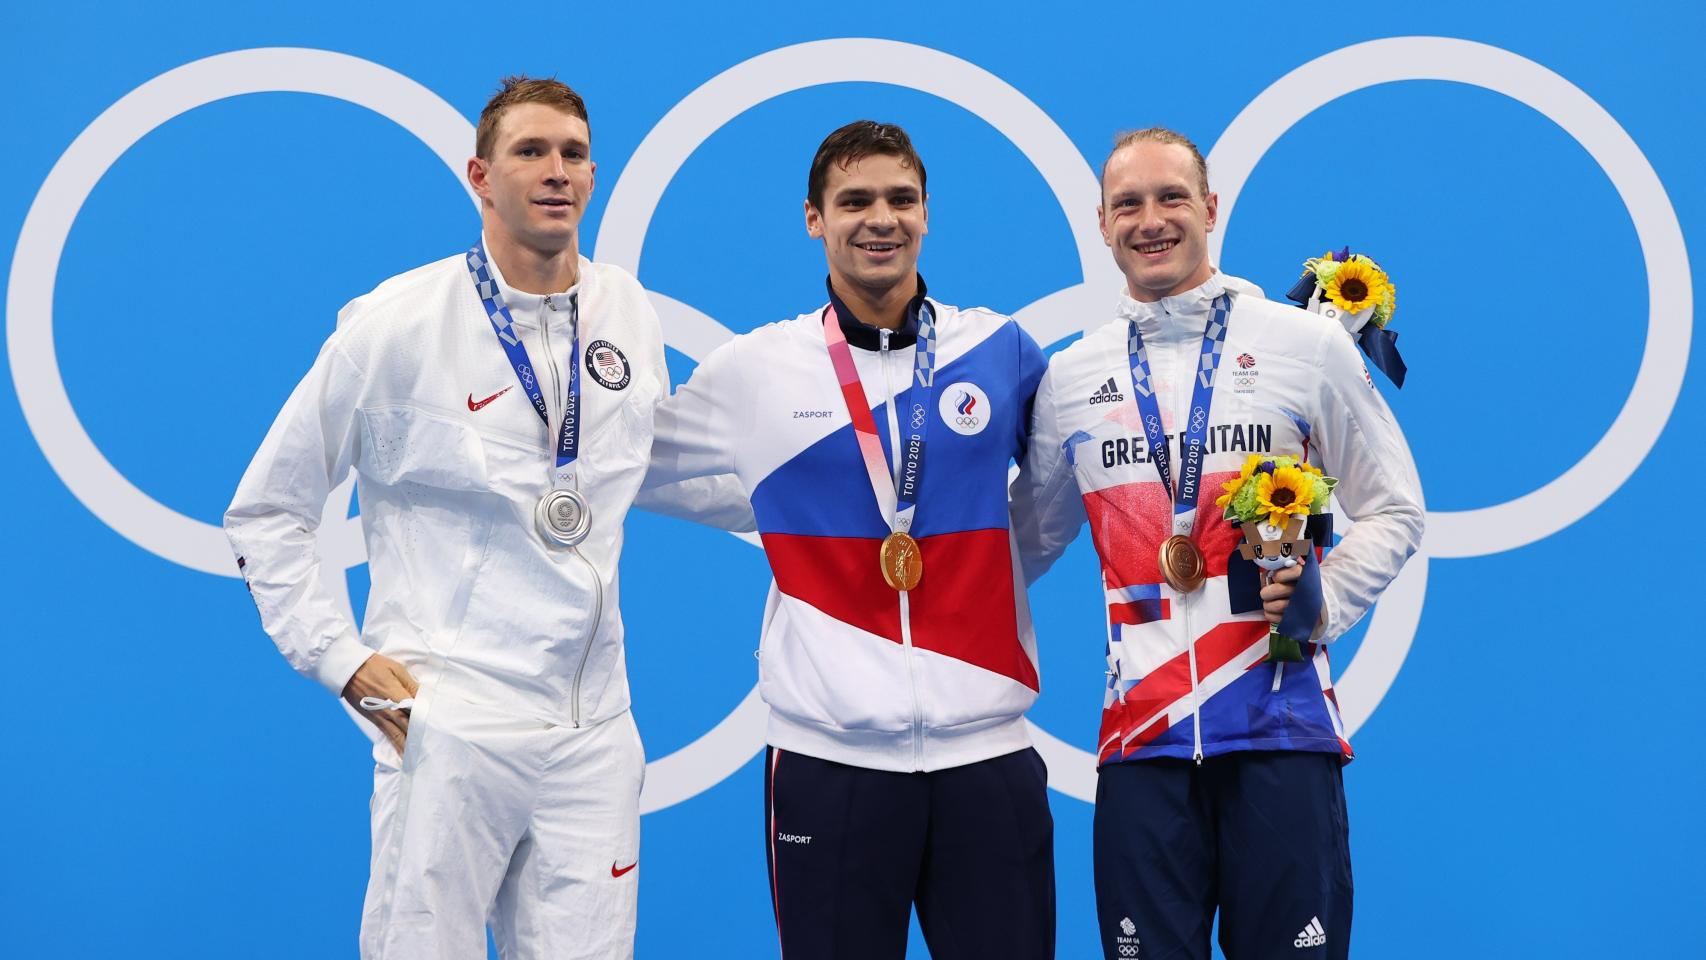 Ryan Murphy (EEUU), Evgeny Rylov (COR) y Luke Greenbank (Gran Bretaña) posando con la medalla